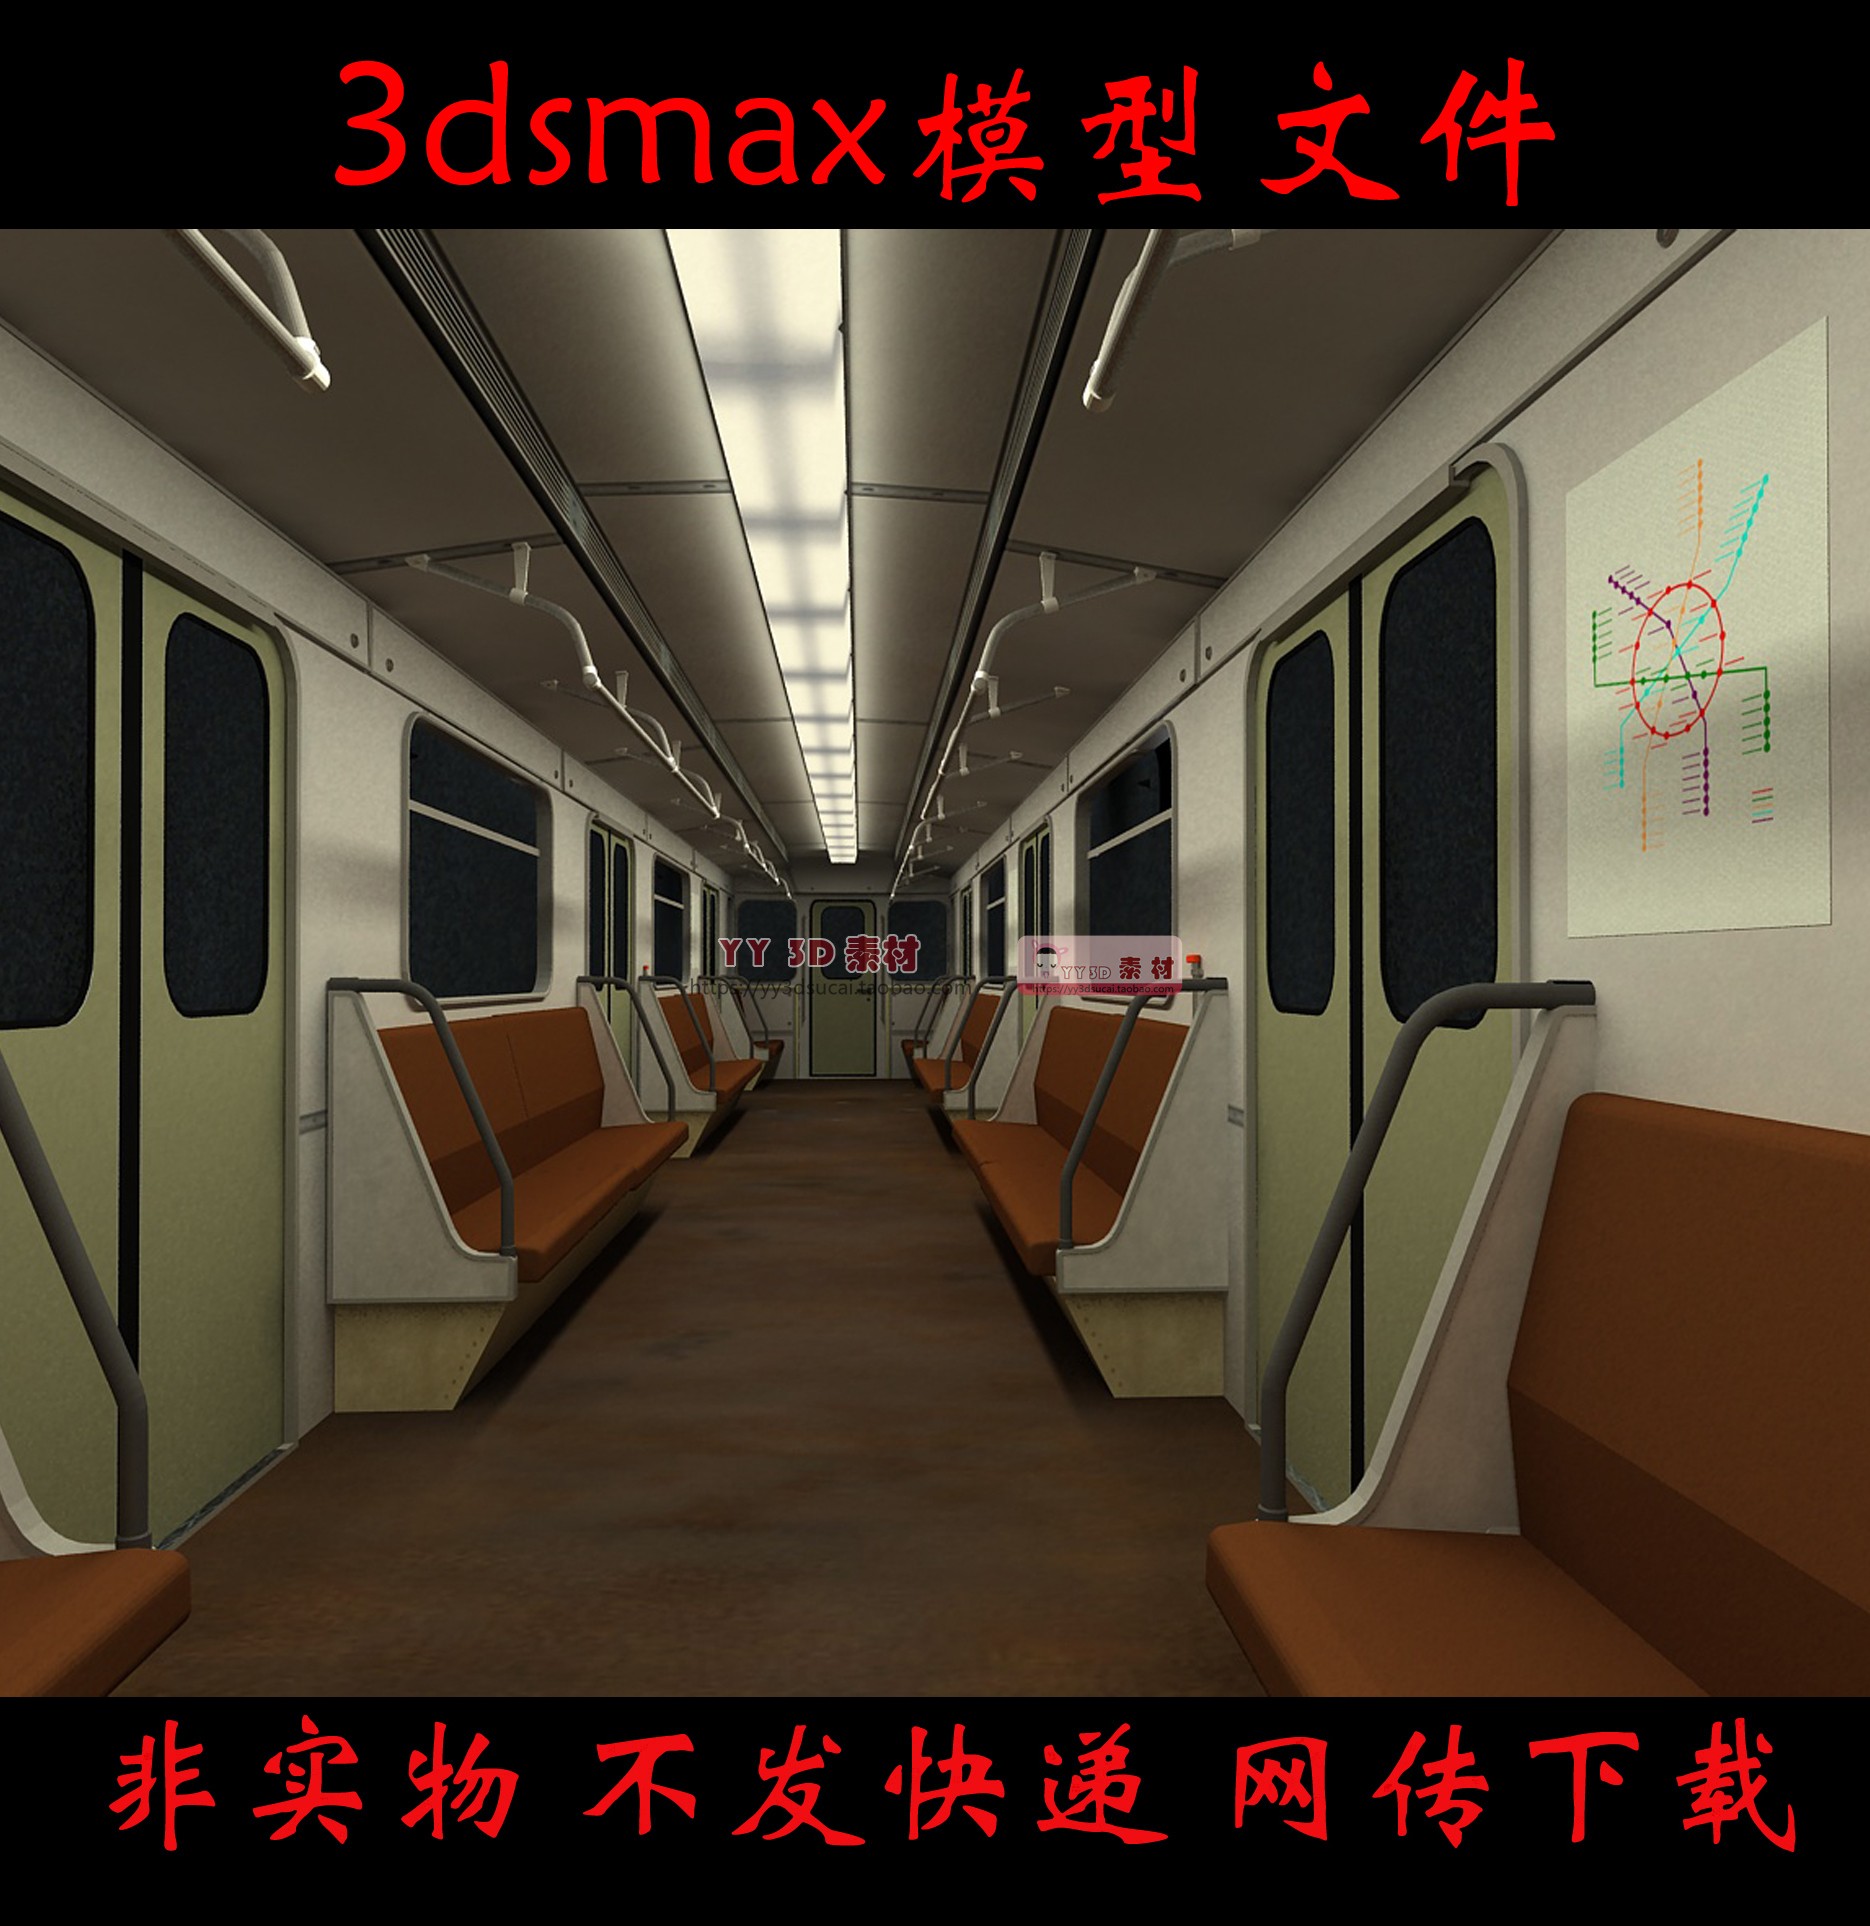 【m0282】复古地铁车厢3dmax模型老式地铁车厢3d模型地铁内部max